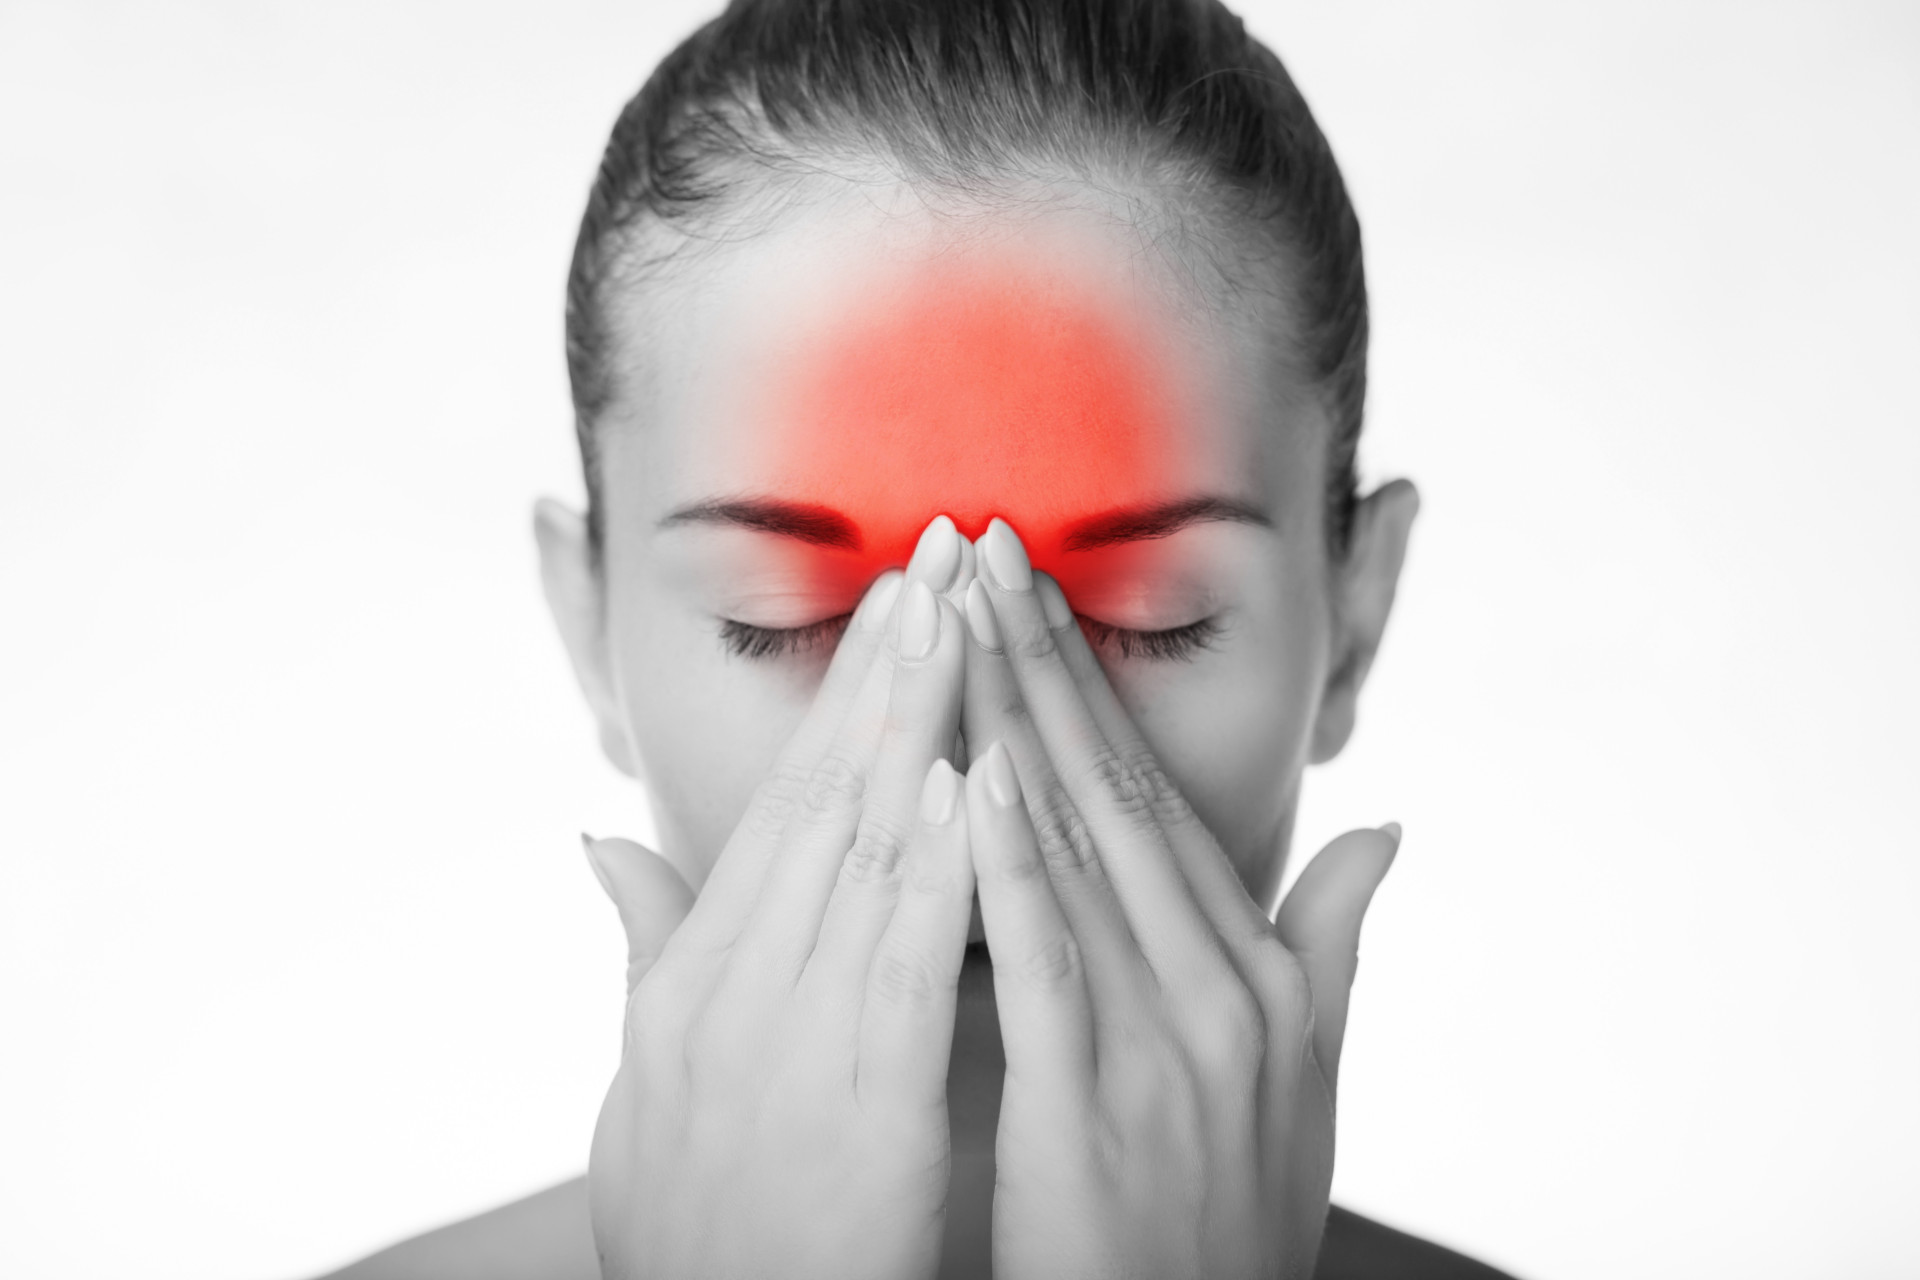 Facial detox: Tips for healthier skin